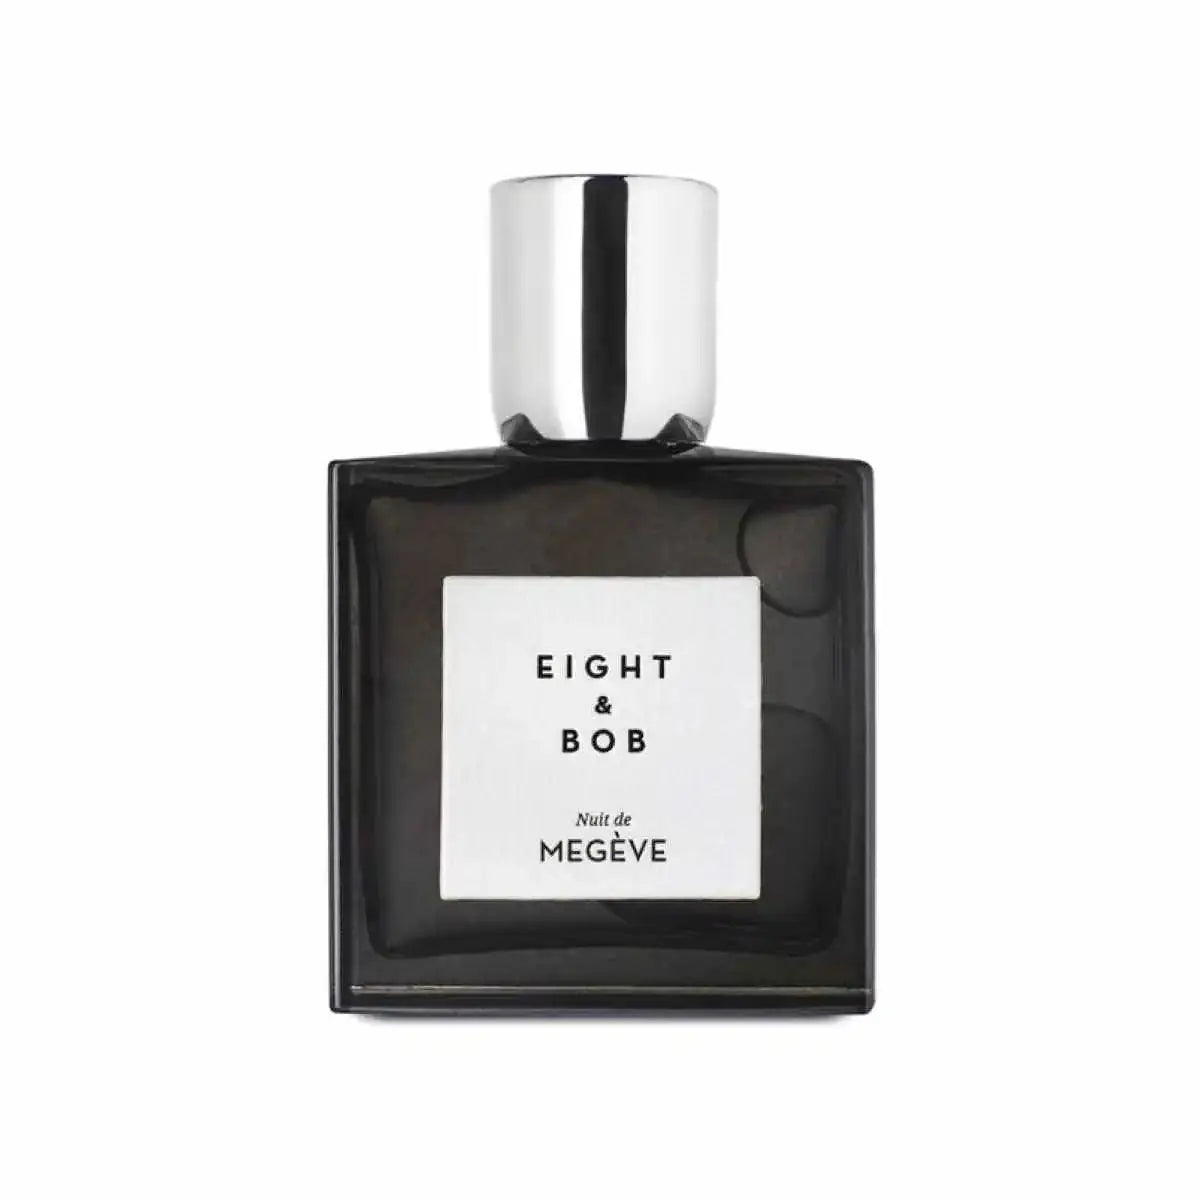 Eight &amp; bob Nuit de Megeve eau de parfum - 30 ml